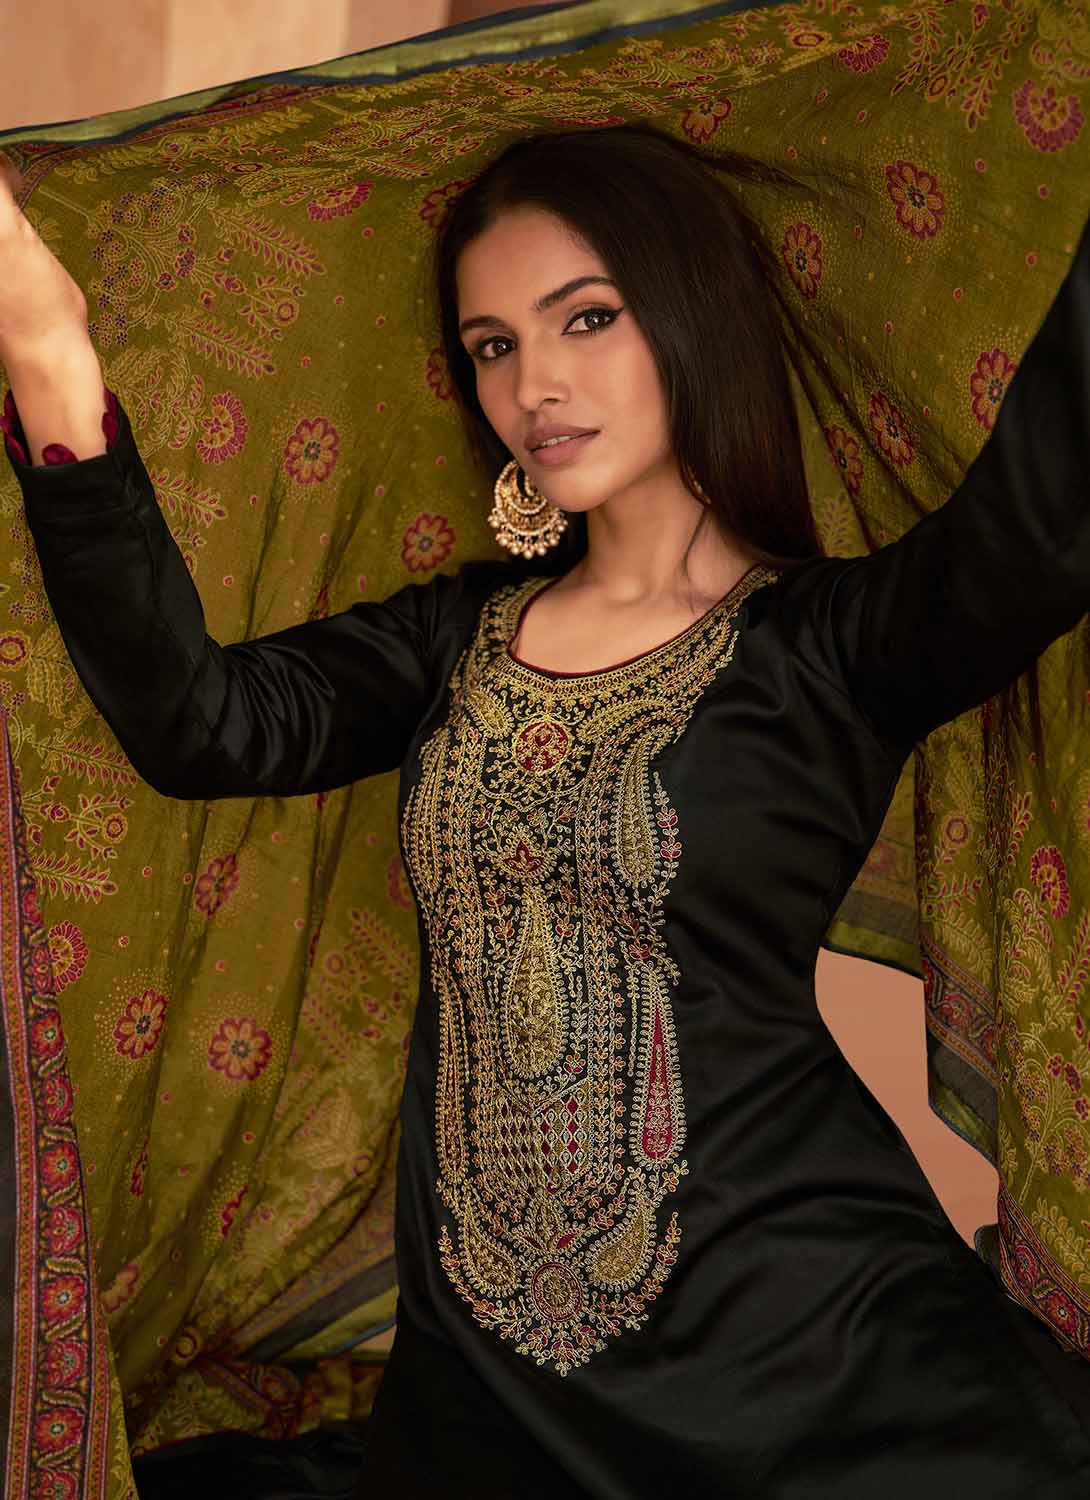 Mumtaz Arts Black Unstitched Cotton Satin Suit Dress Material for Ladies Mumtaz Arts